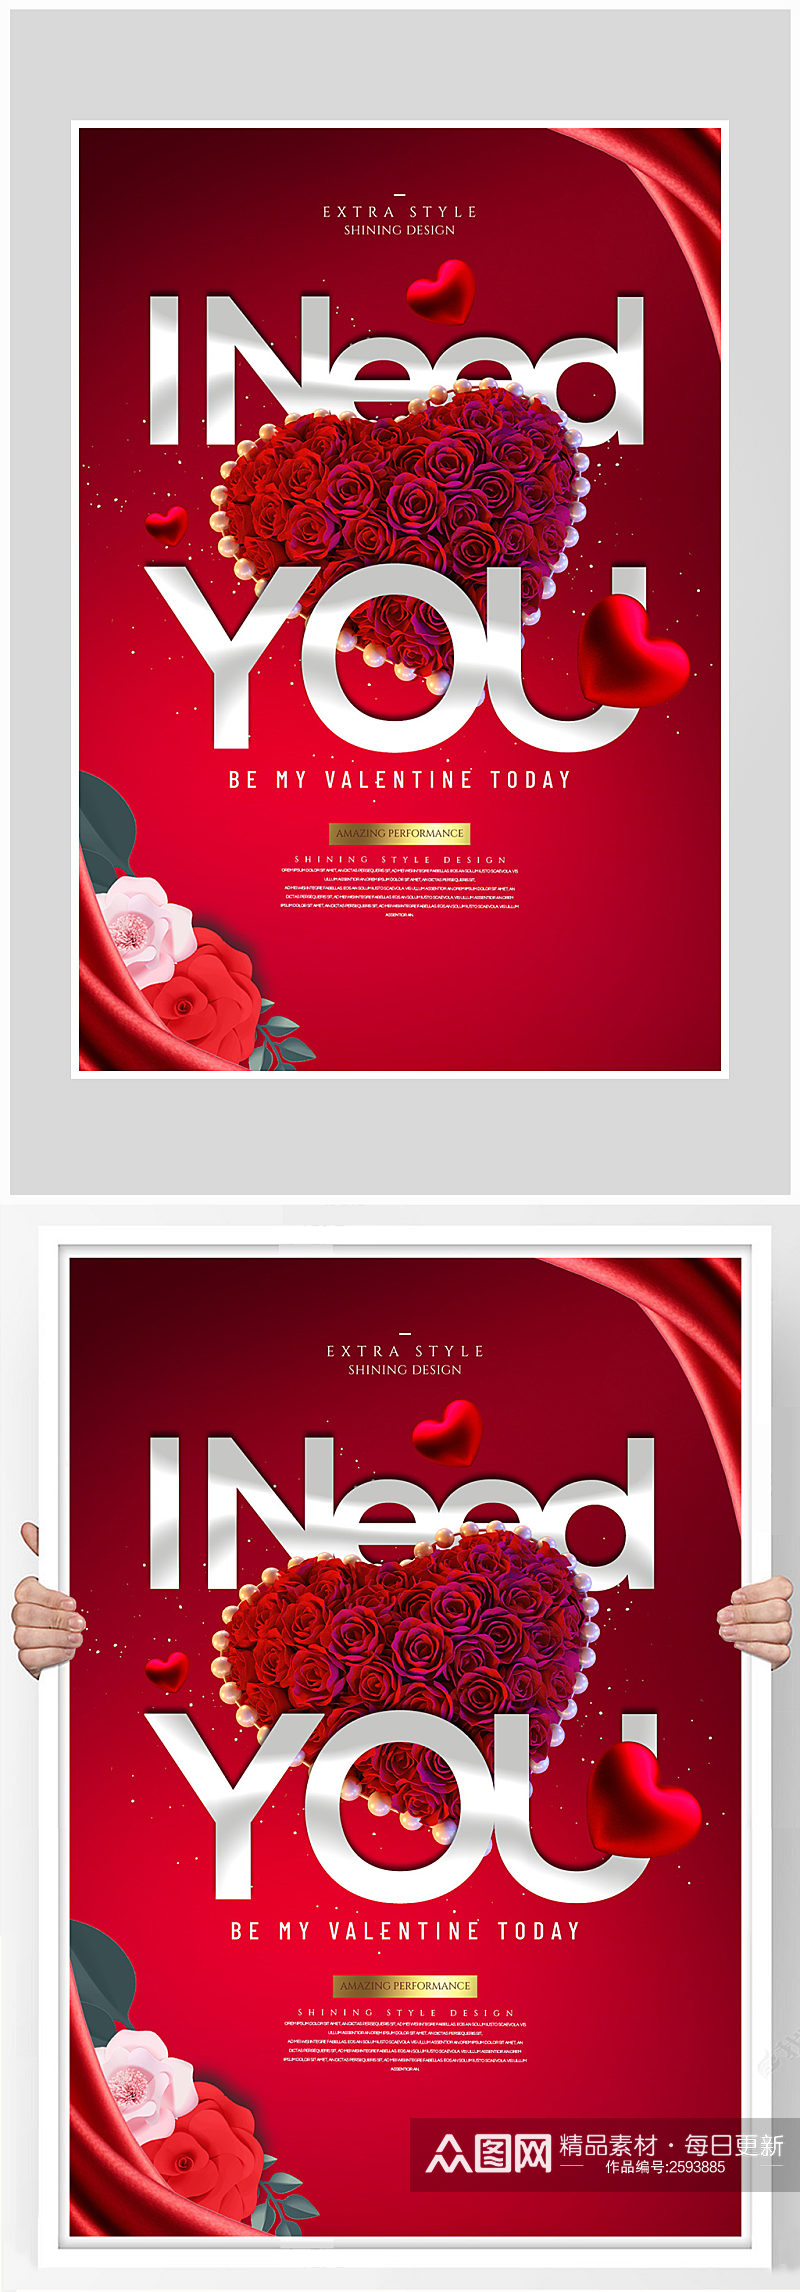 红色立体感情人节爱情海报设计素材